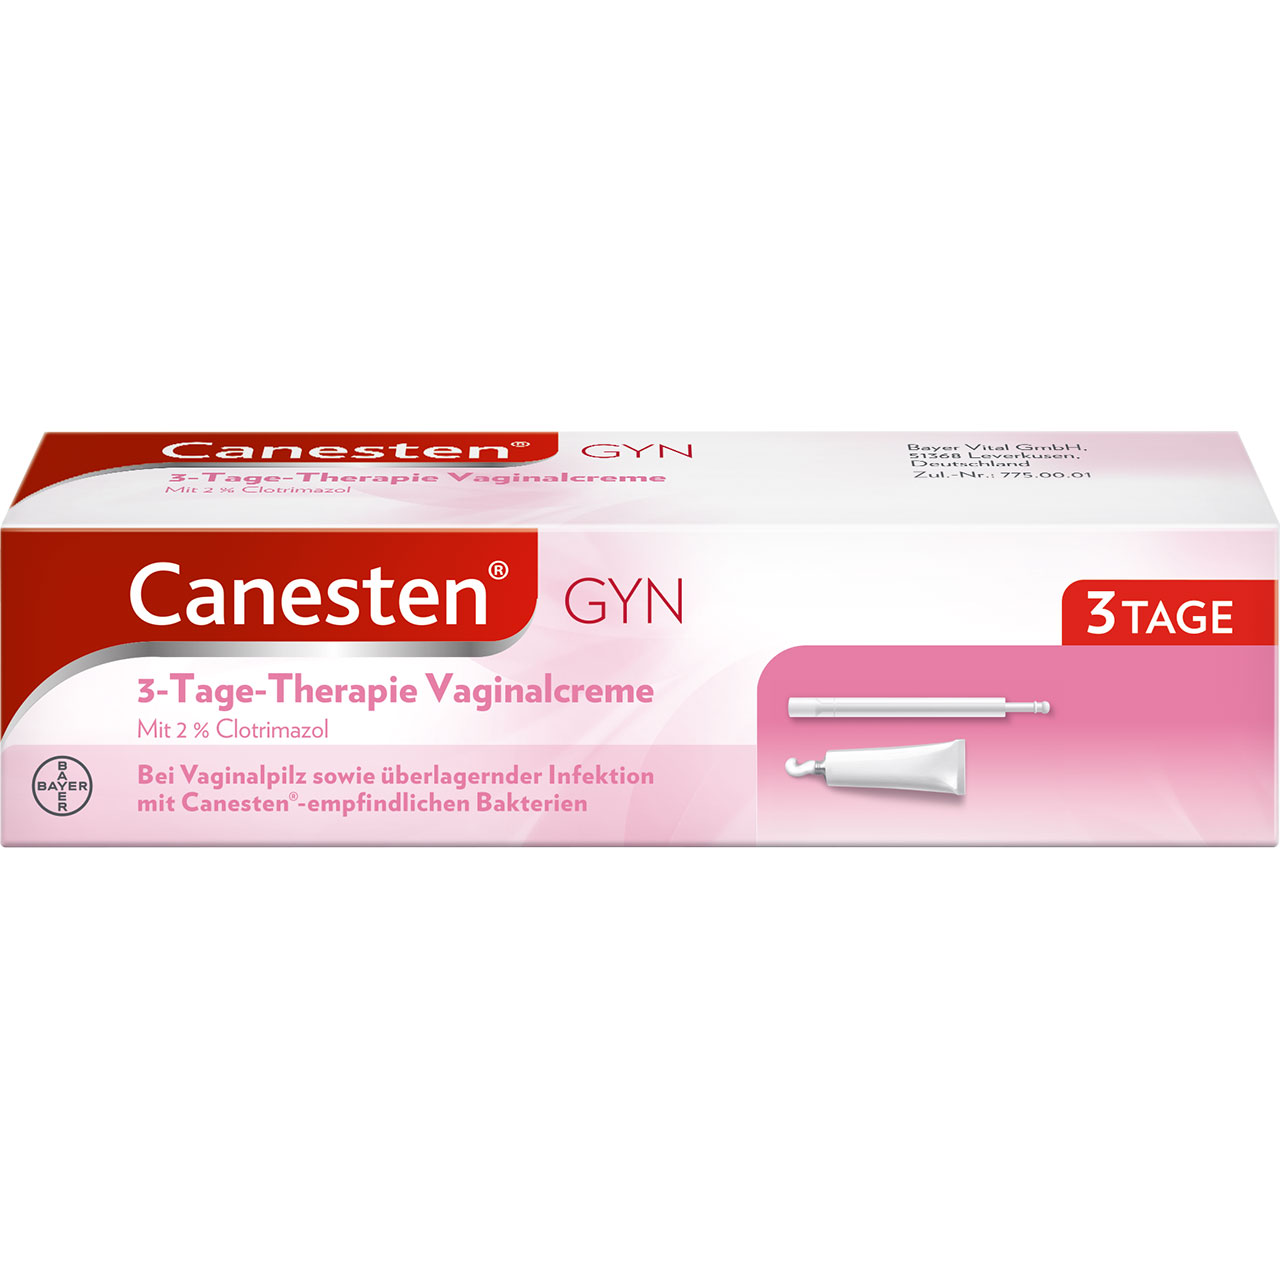 Canesten Â® GYN 3 Tage Therapie Vaginalcreme Shop Apothekeat 